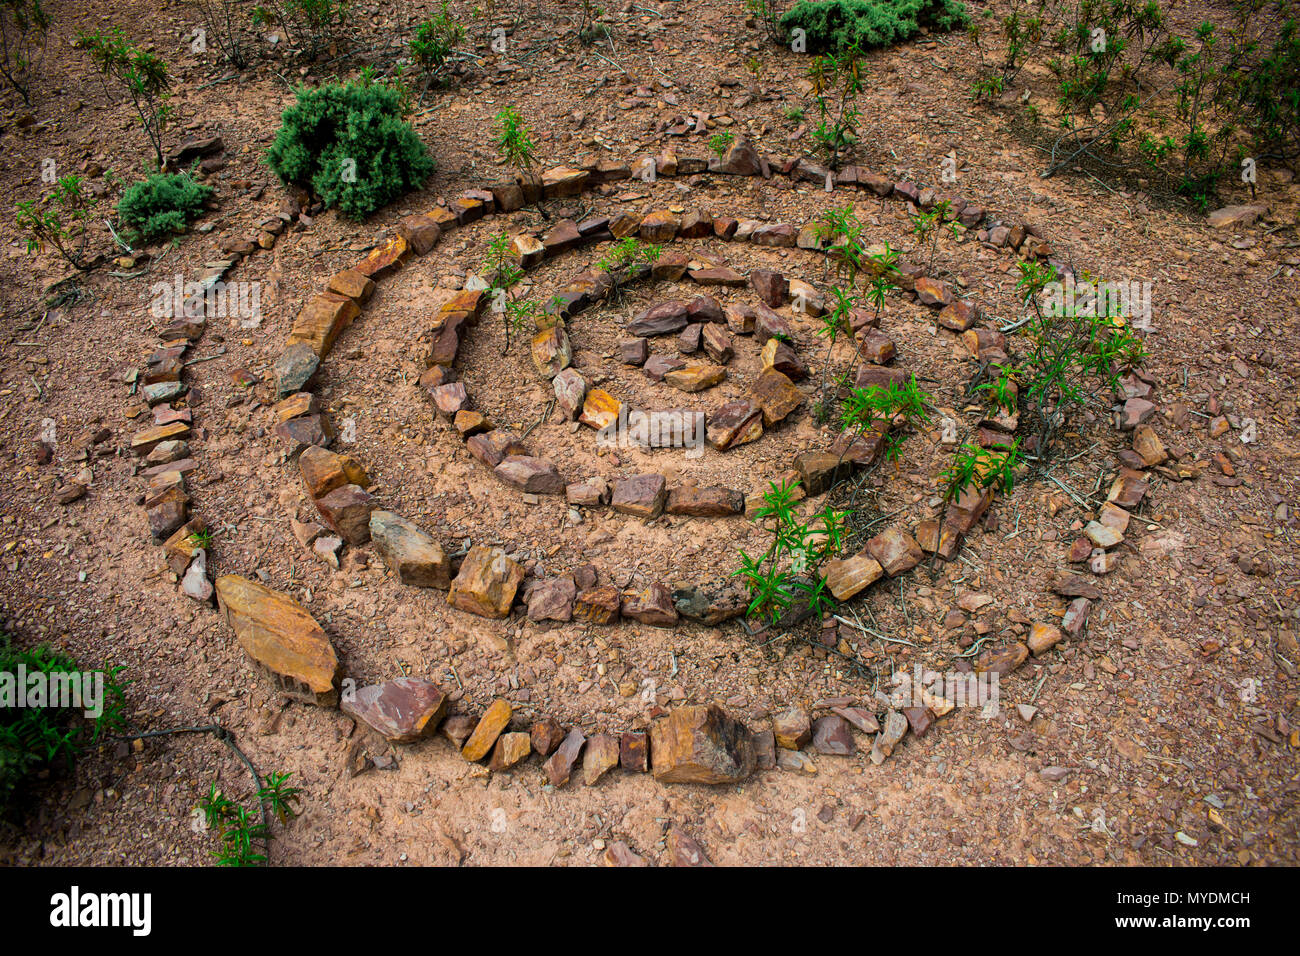 Stein Spirale, die aus vielen einzelnen Felsen auf einer trockenen, steinigen Boden mit grünen Pflanzen wachsen durch die Spirale der Steine. Stockfoto